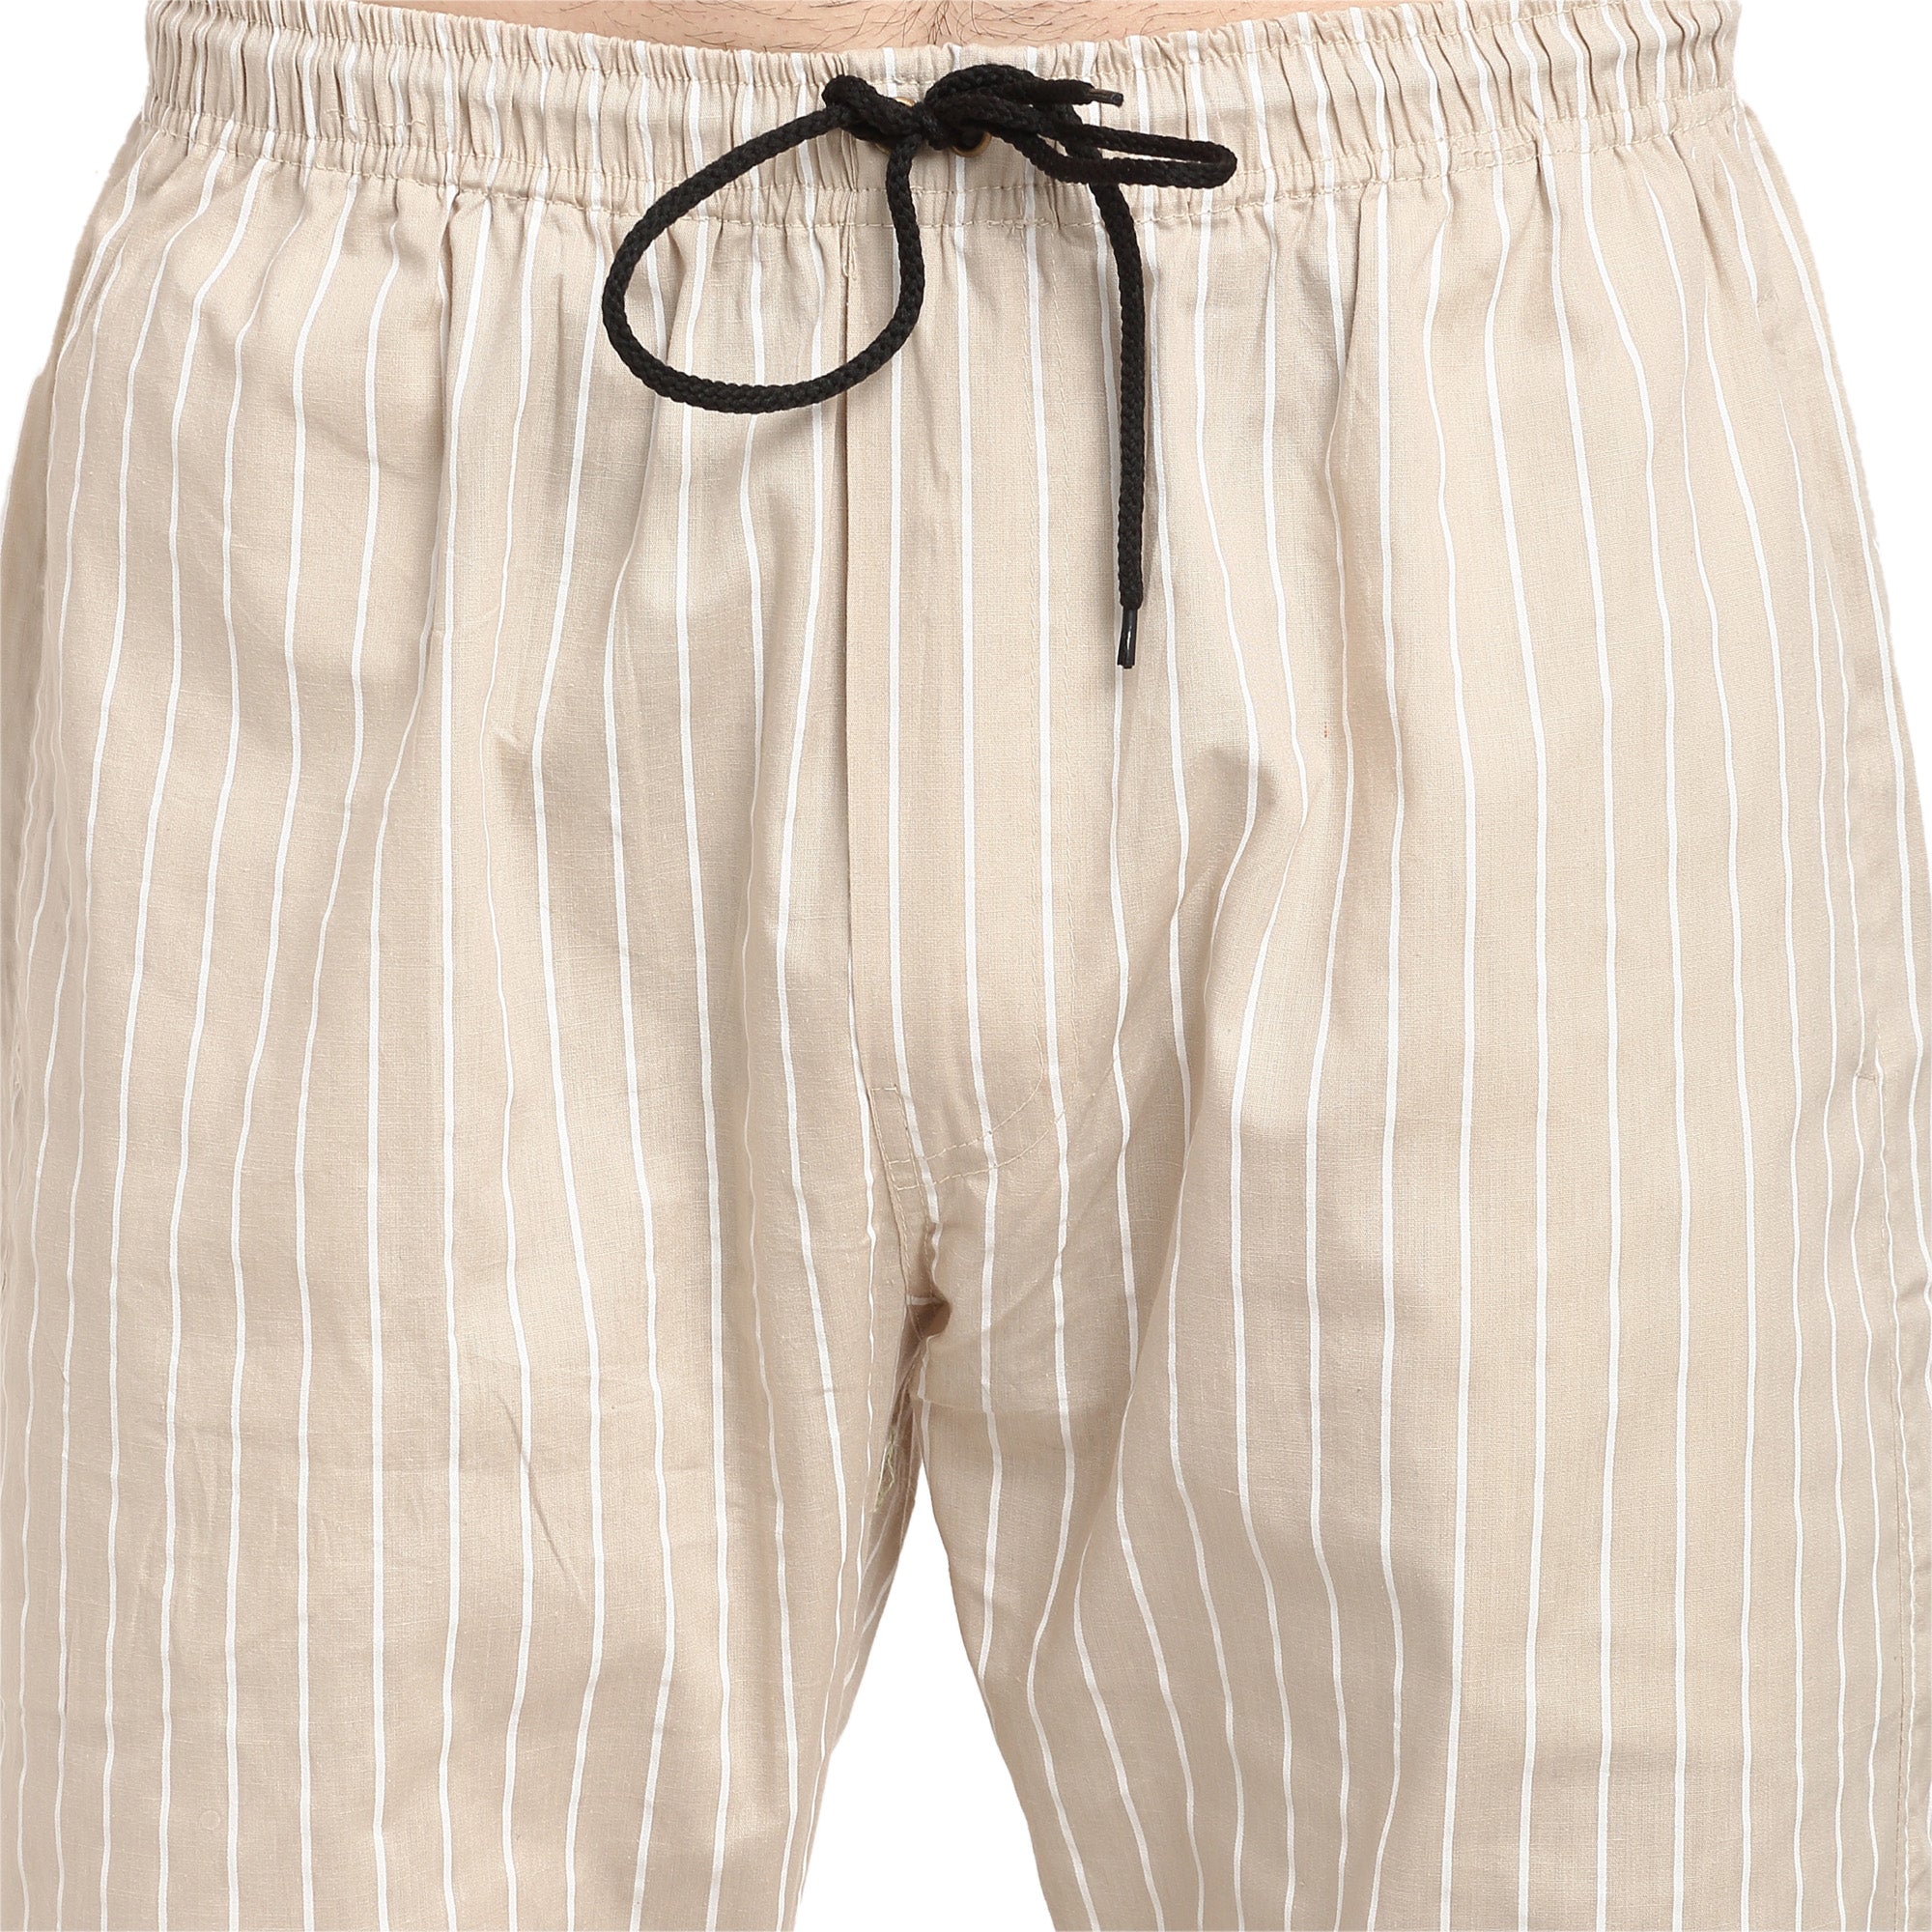 Jainish Men's Beige Cotton Striped Track Pants